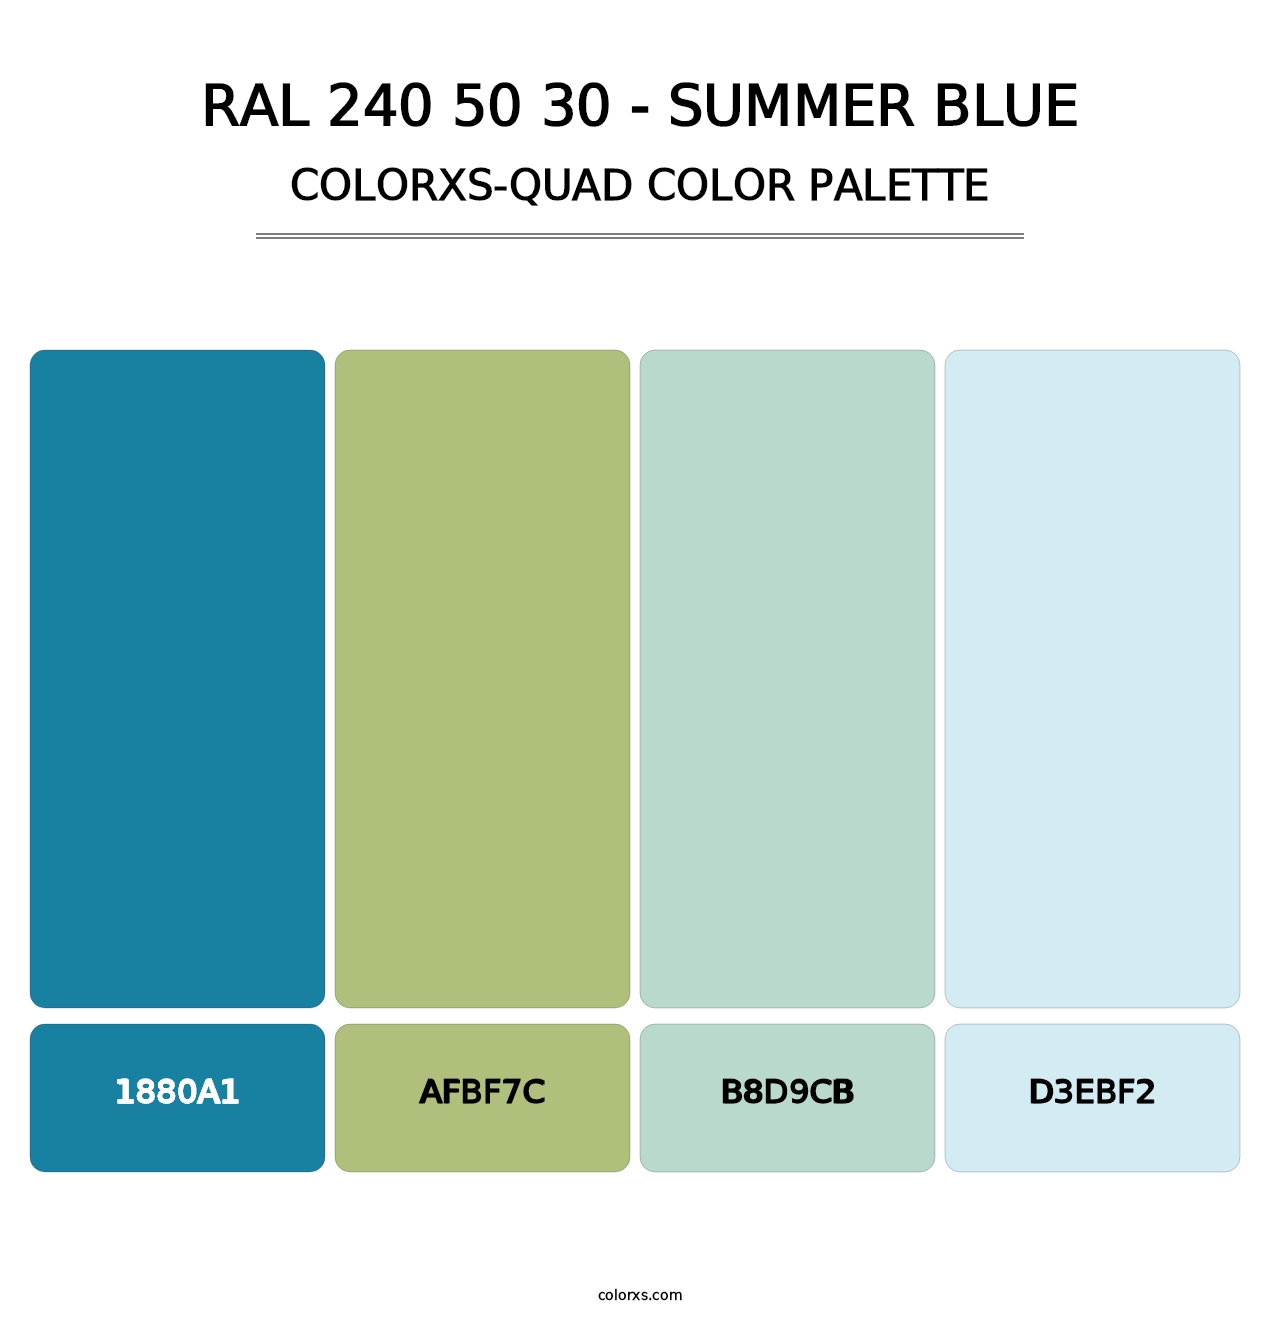 RAL 240 50 30 - Summer Blue - Colorxs Quad Palette